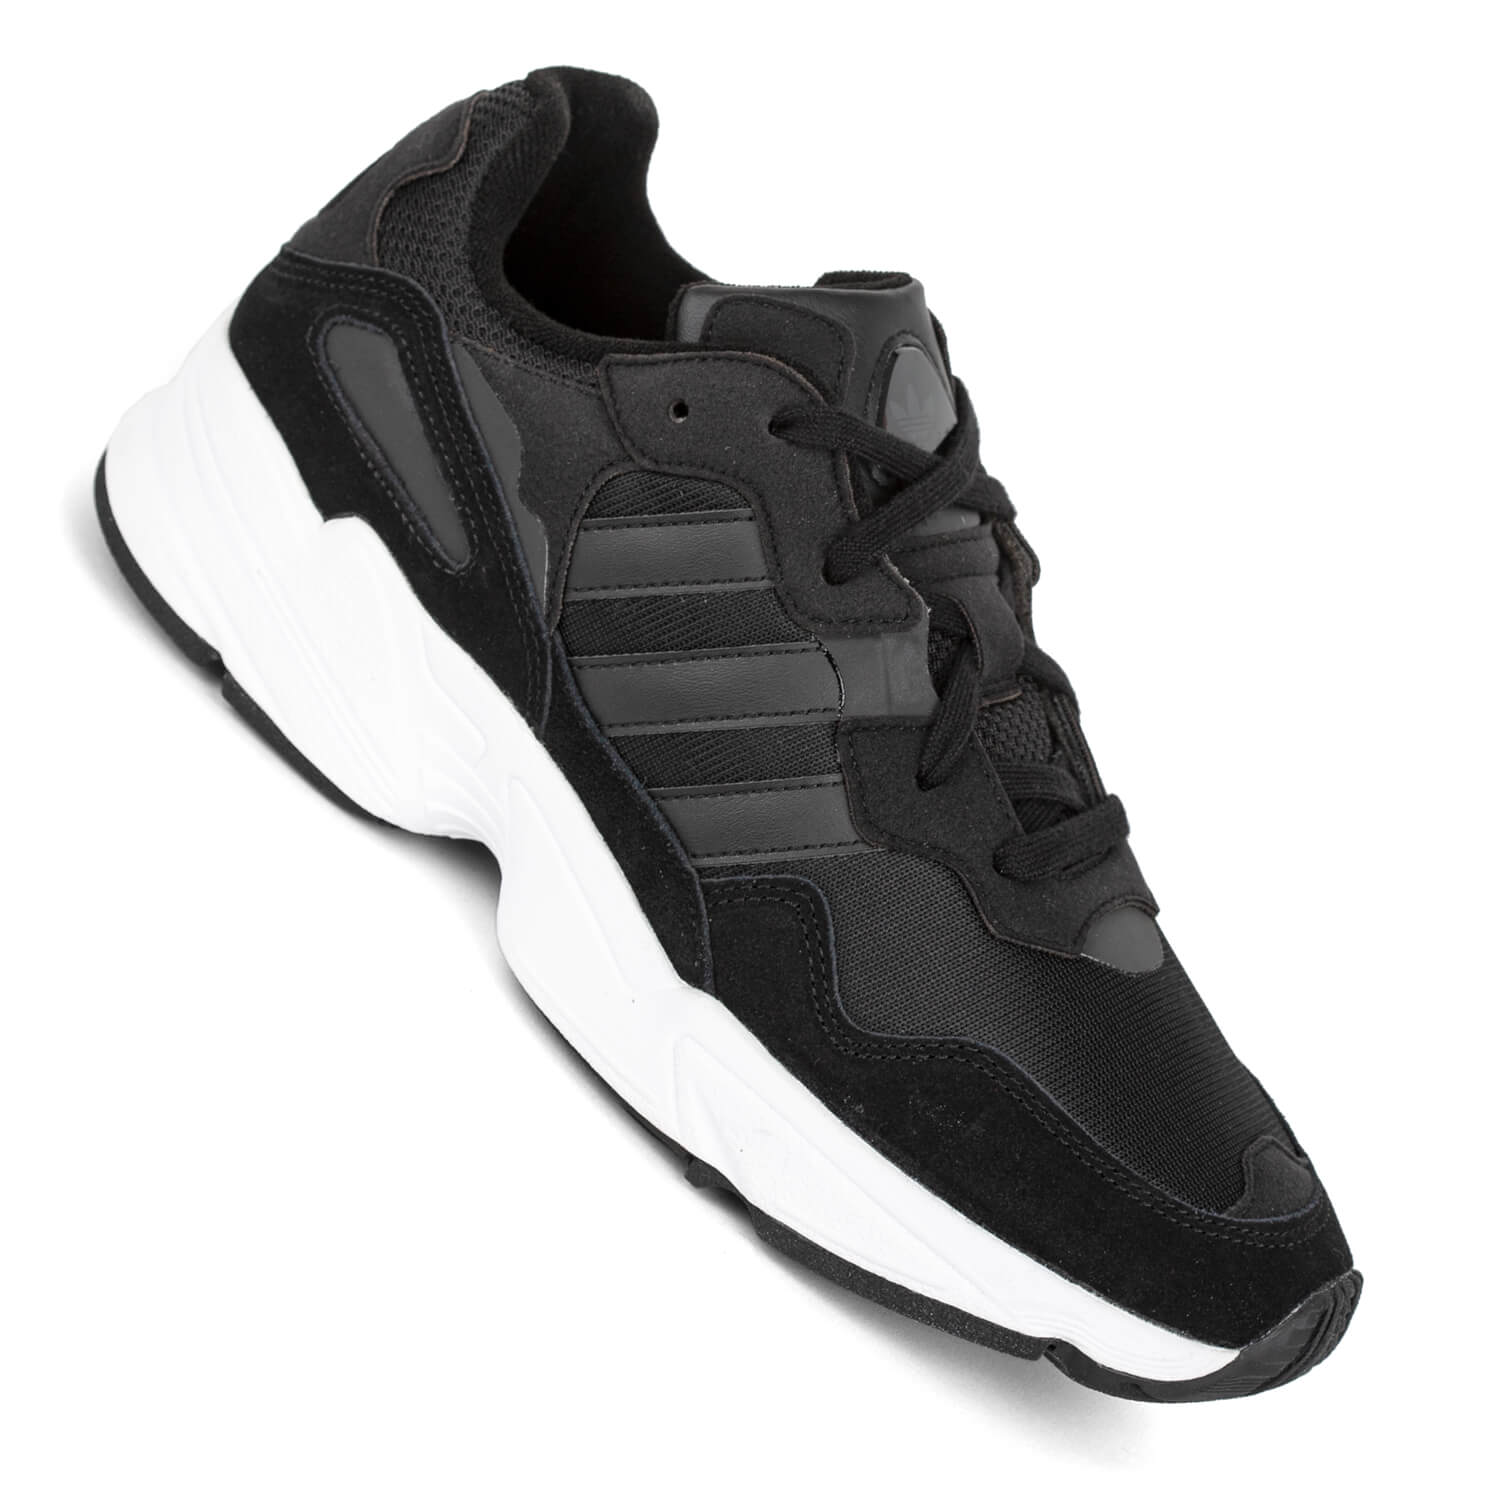 Adidas Yung-96 schwarz weiß Herren Sneaker 90s Look mit ...